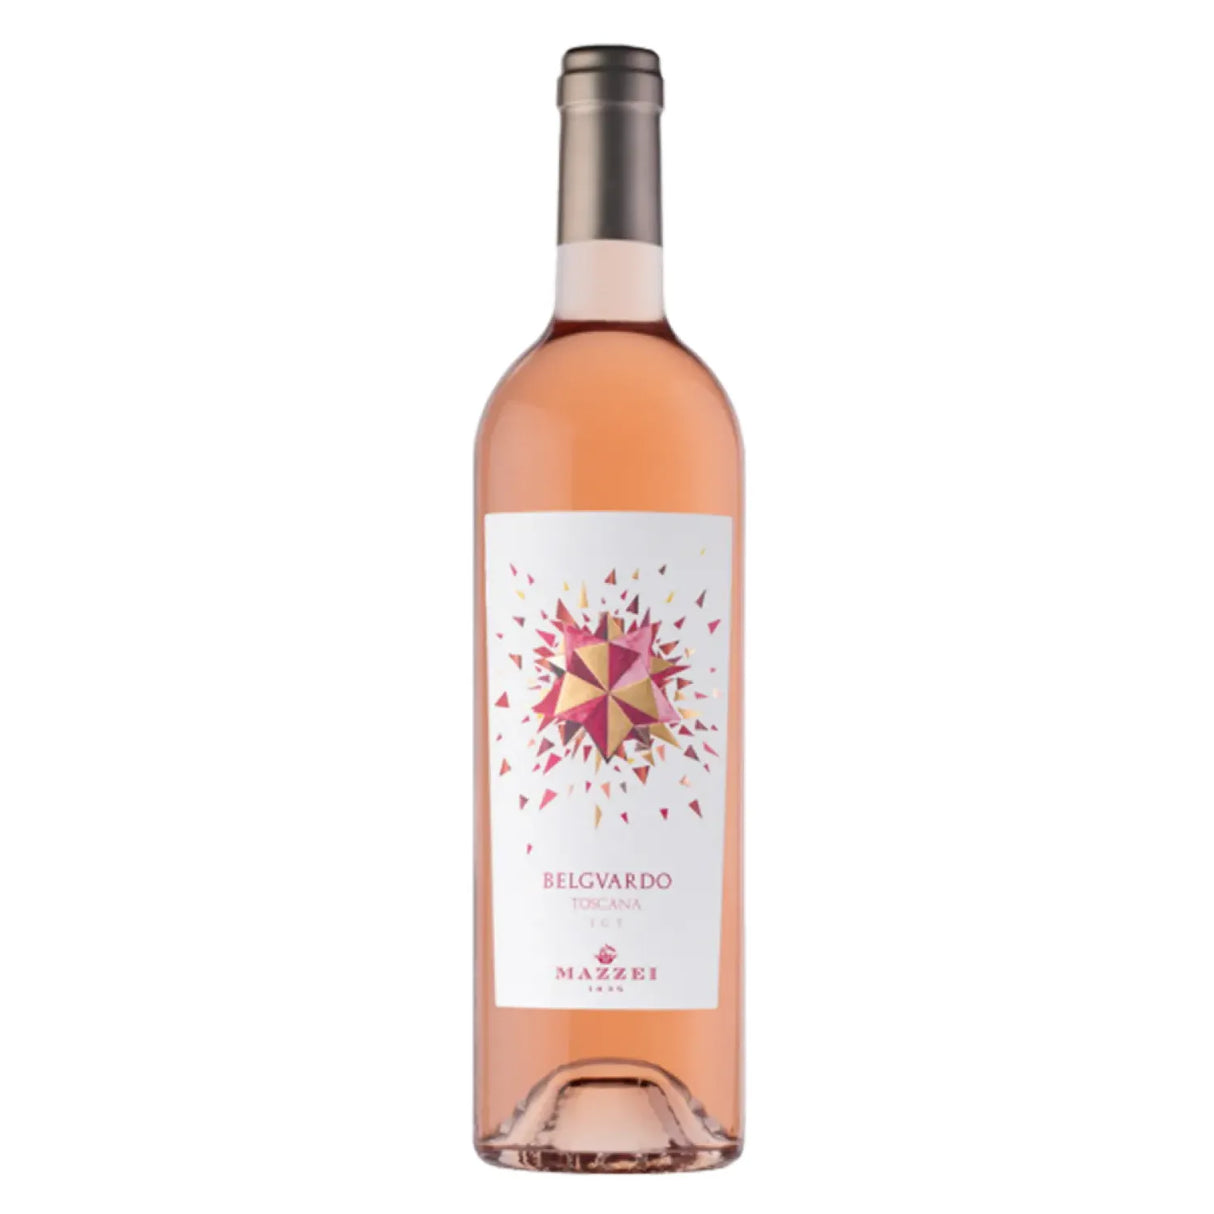 Belgvardo Rose Toscana IGT 2021 (12 bottles)